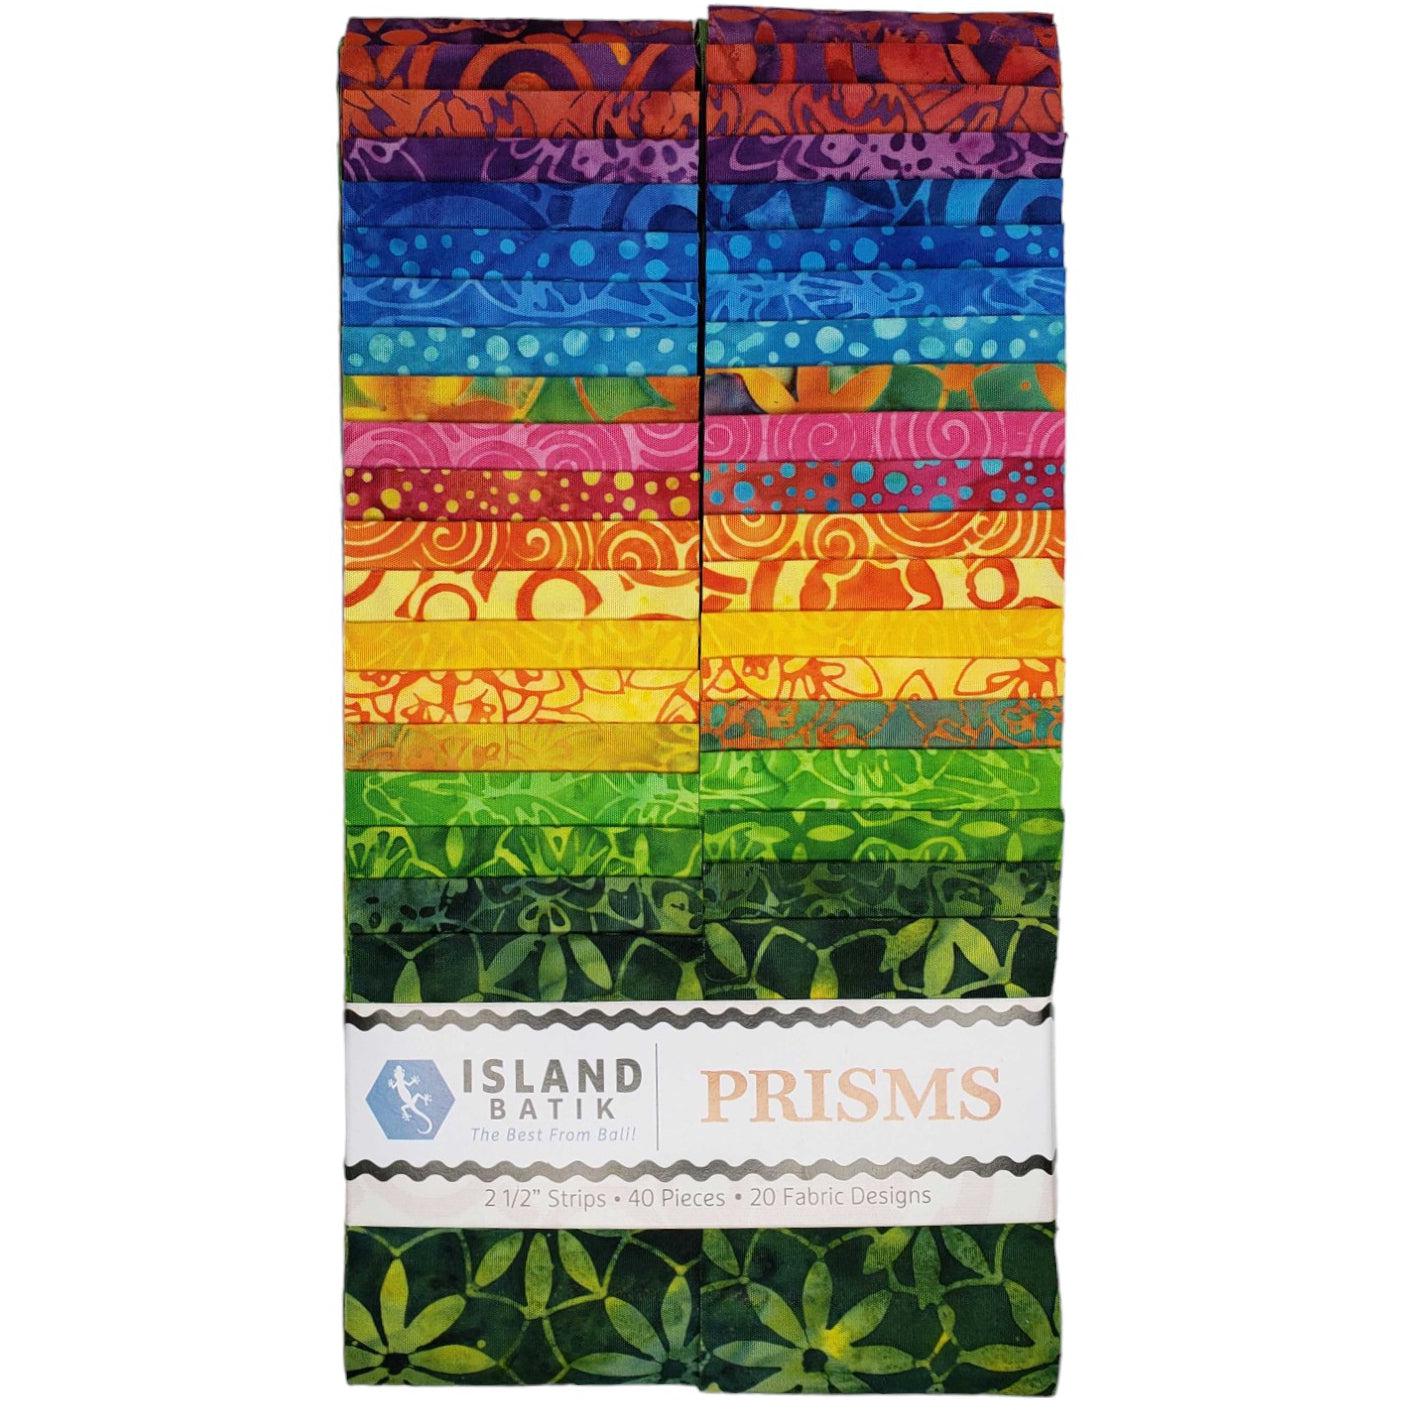 Prisms Batik 2½" Strip Set